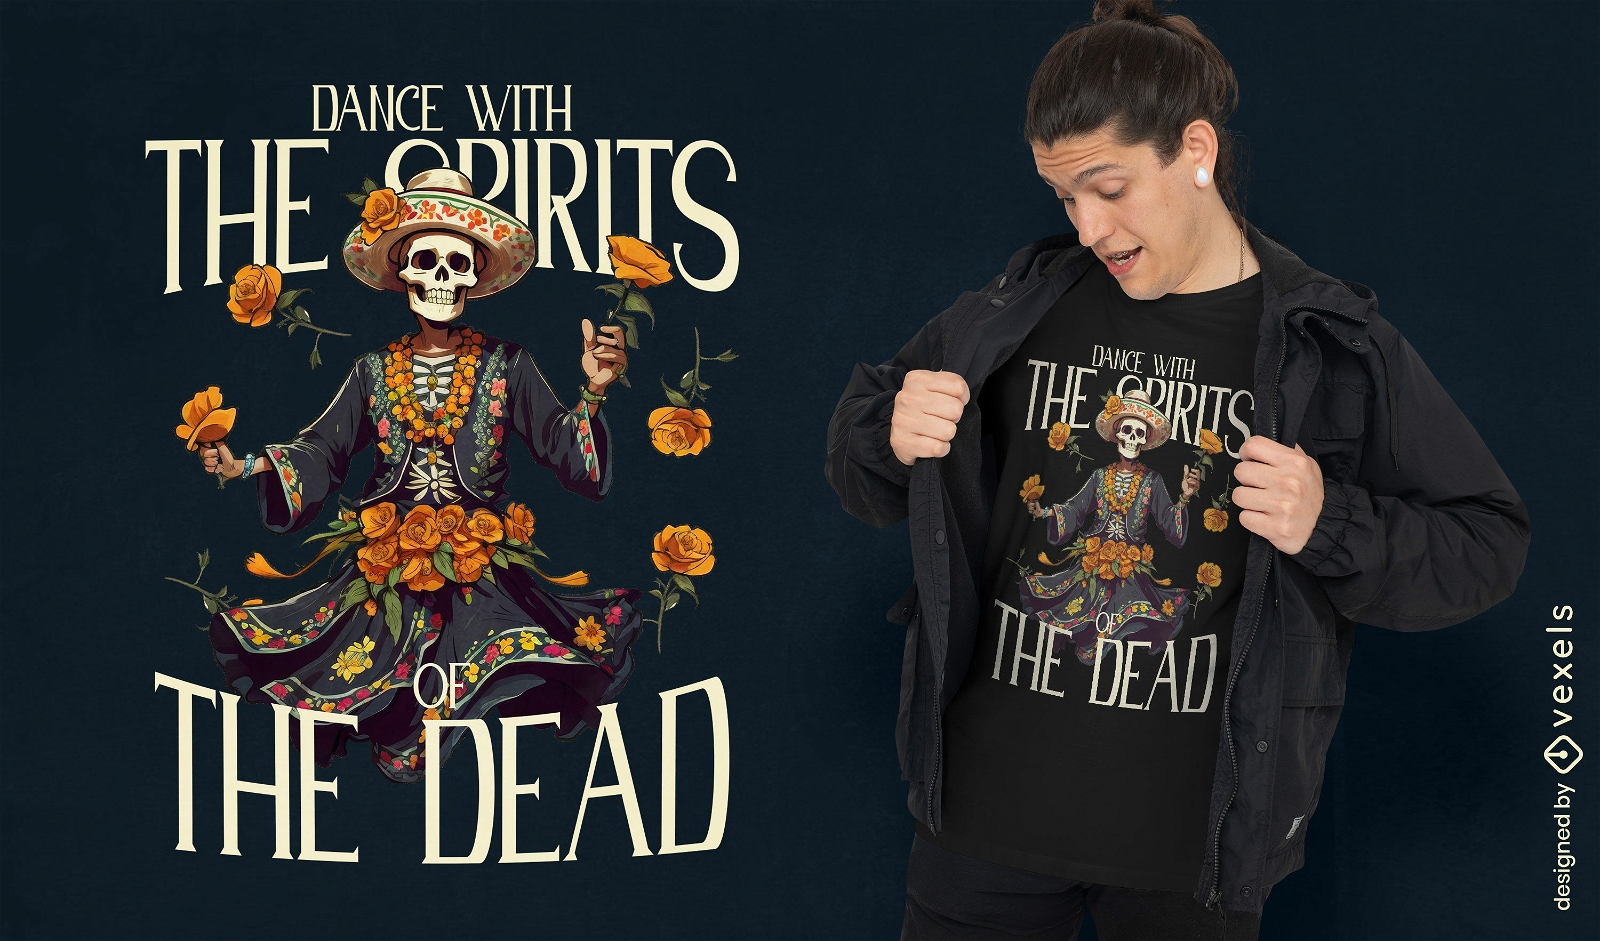 Dise?o de camiseta de la danza en?rgica de los muertos.